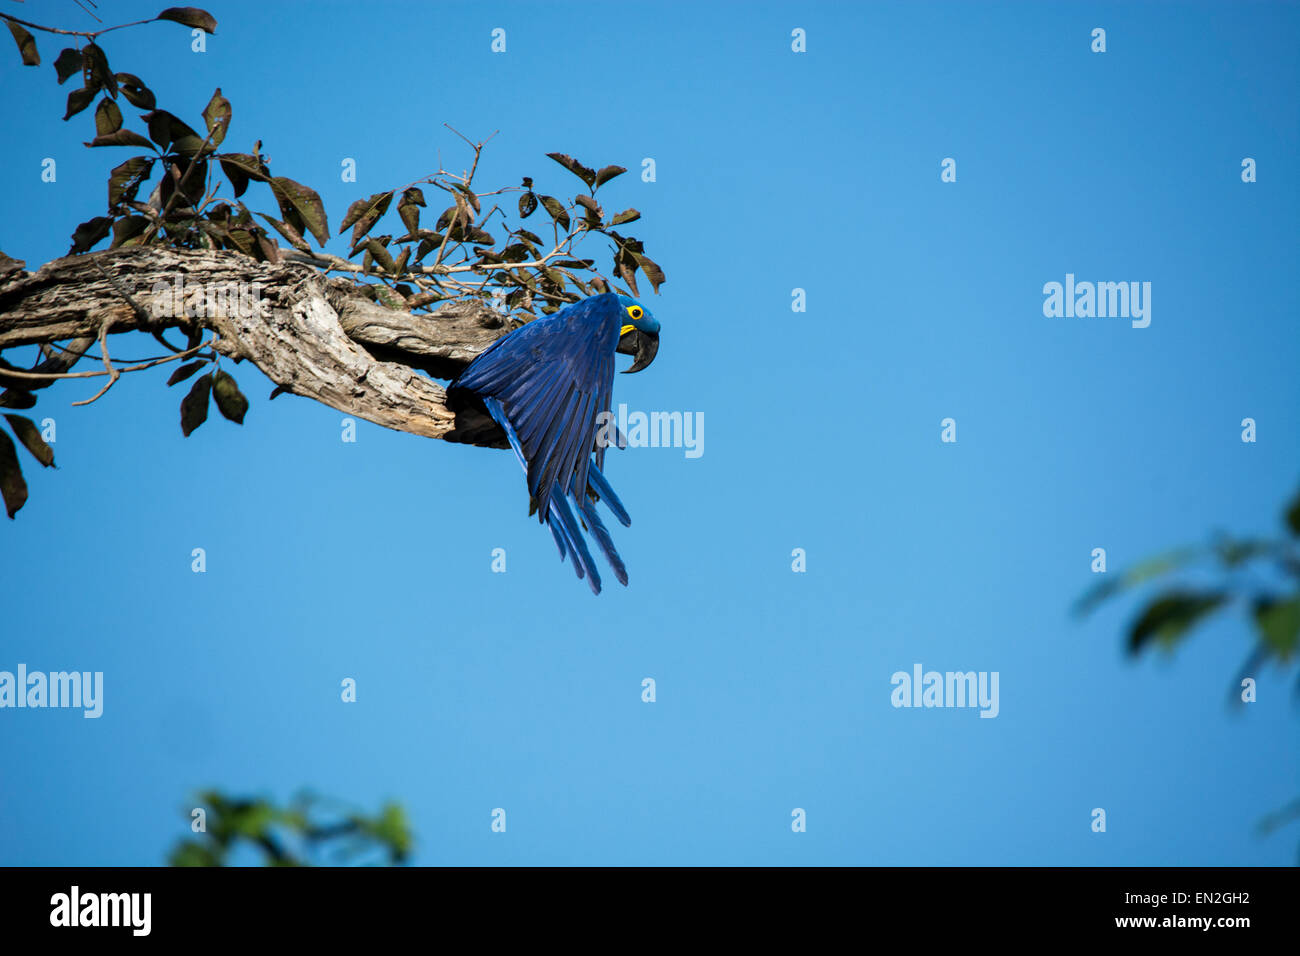 Jacinthe Macaw, adultes Anodorhynchus hyacinthinus, commençant à voler d'un arbre, Pantanal, Mato Grosso, Brésil, Amérique du Sud Banque D'Images